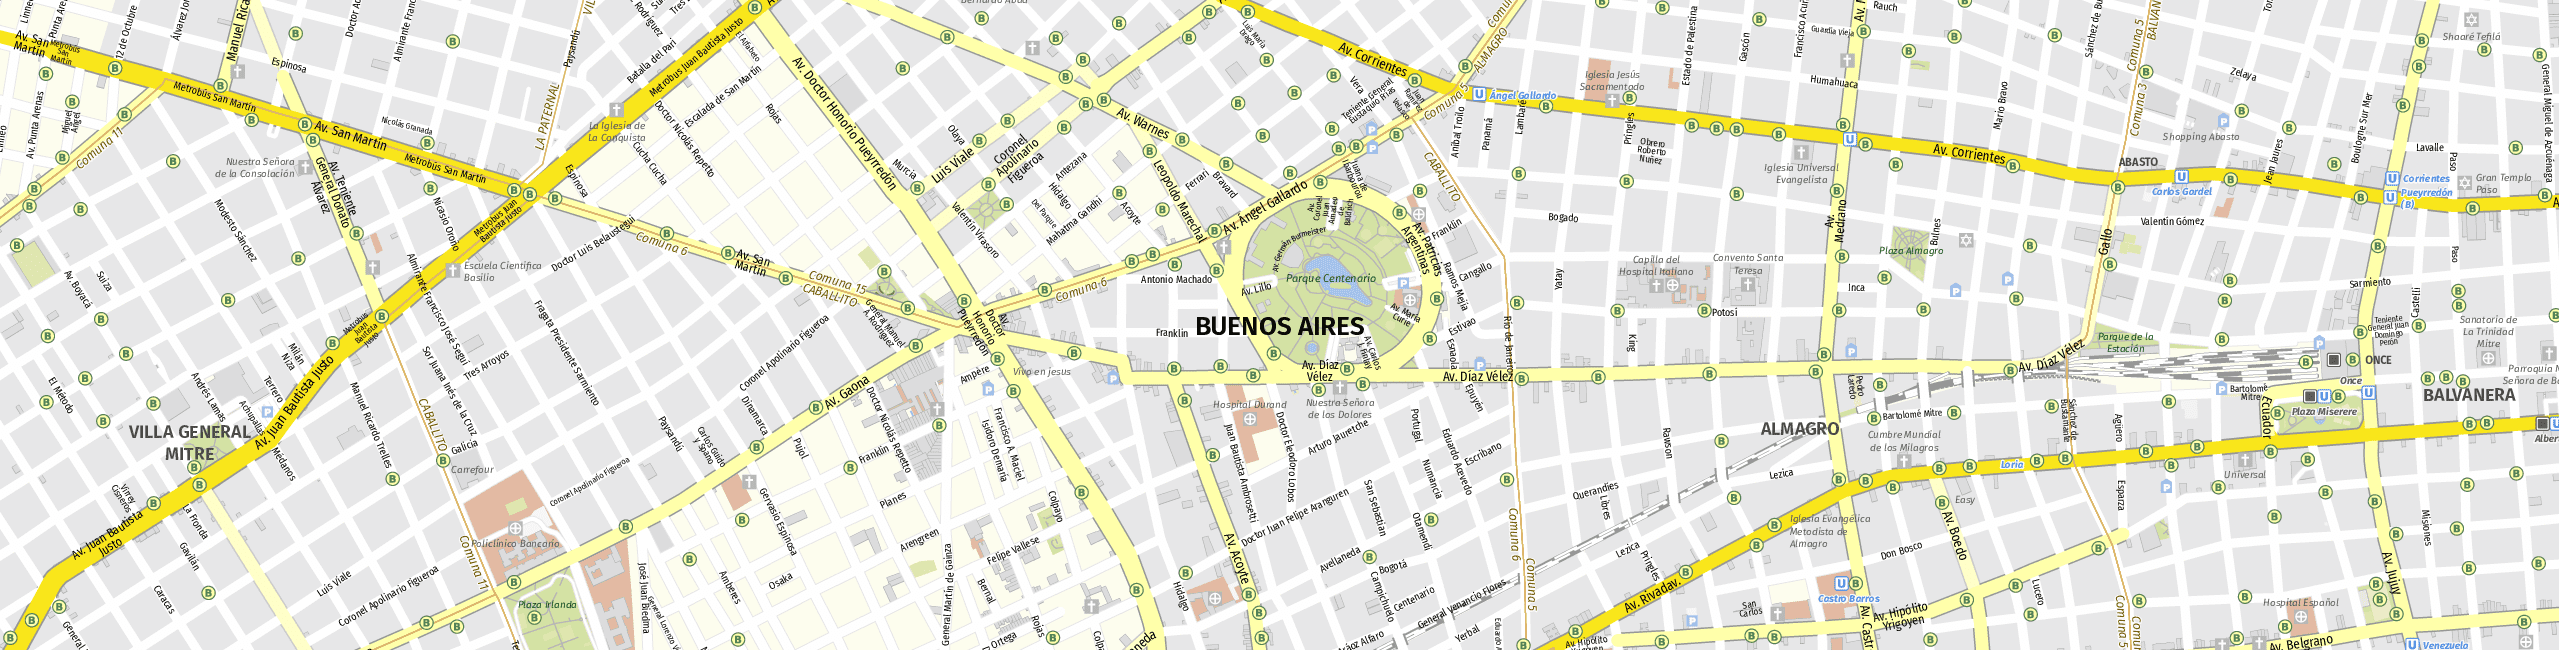 Stadtplan Buenos Aires zum Downloaden.